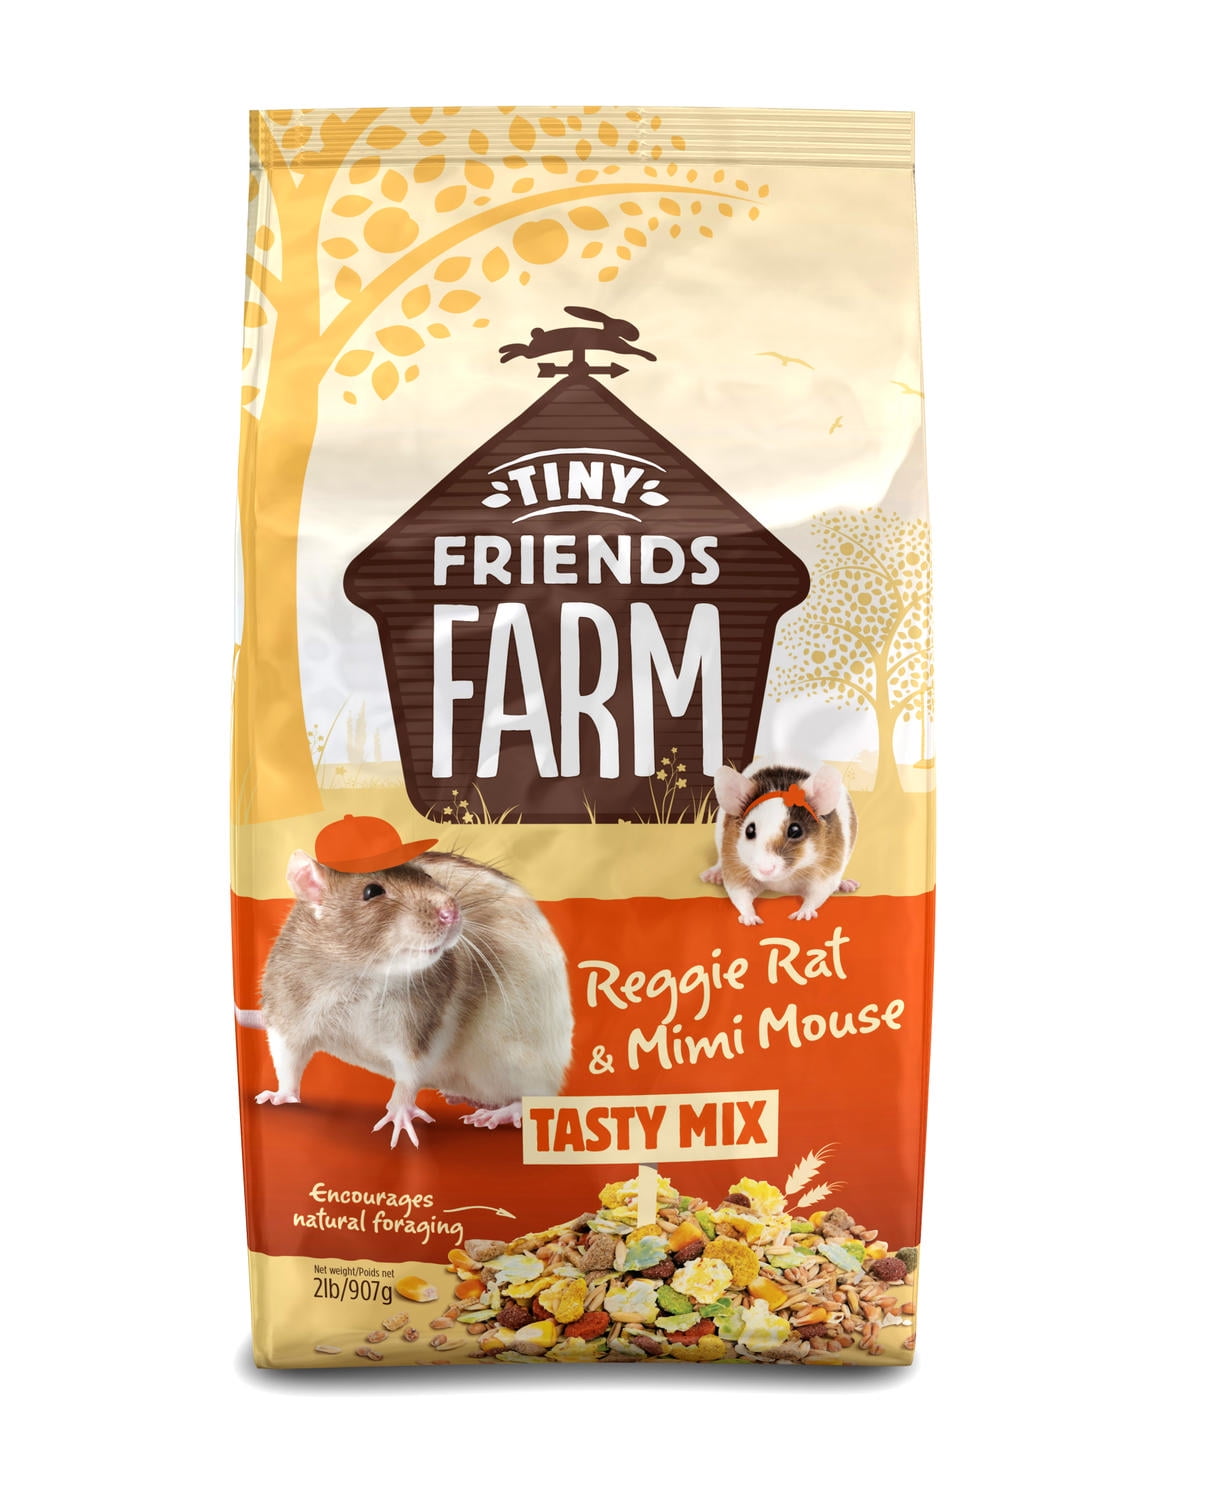 Su21170 Tiny Friends Farm Reggie Rat & Mimi Mouse Food - 2 Lbs